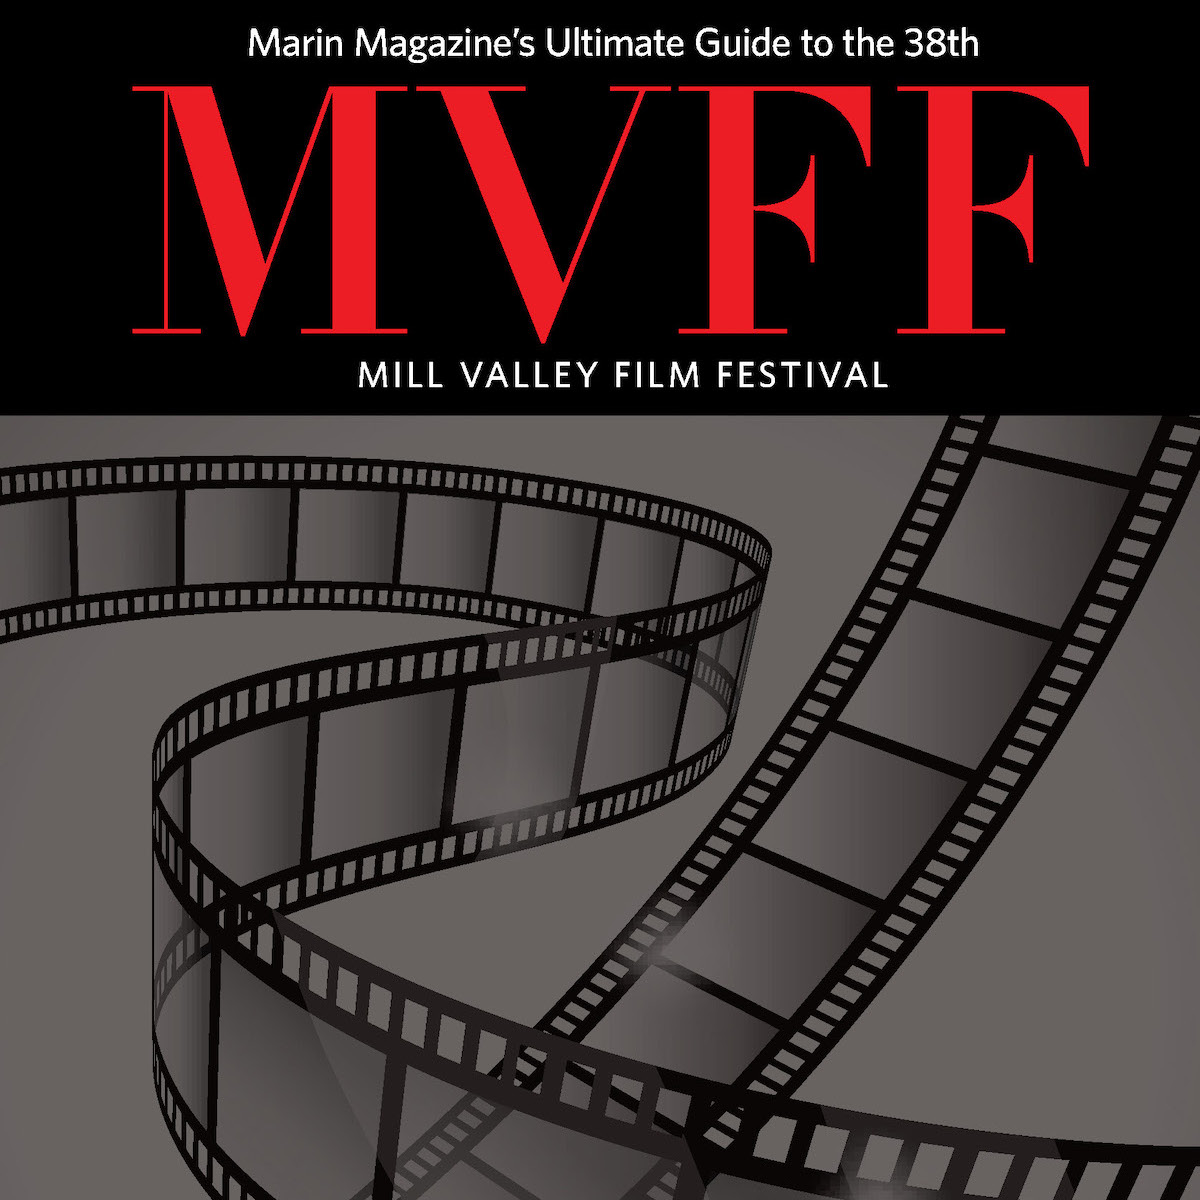 mill valley film festival 2015